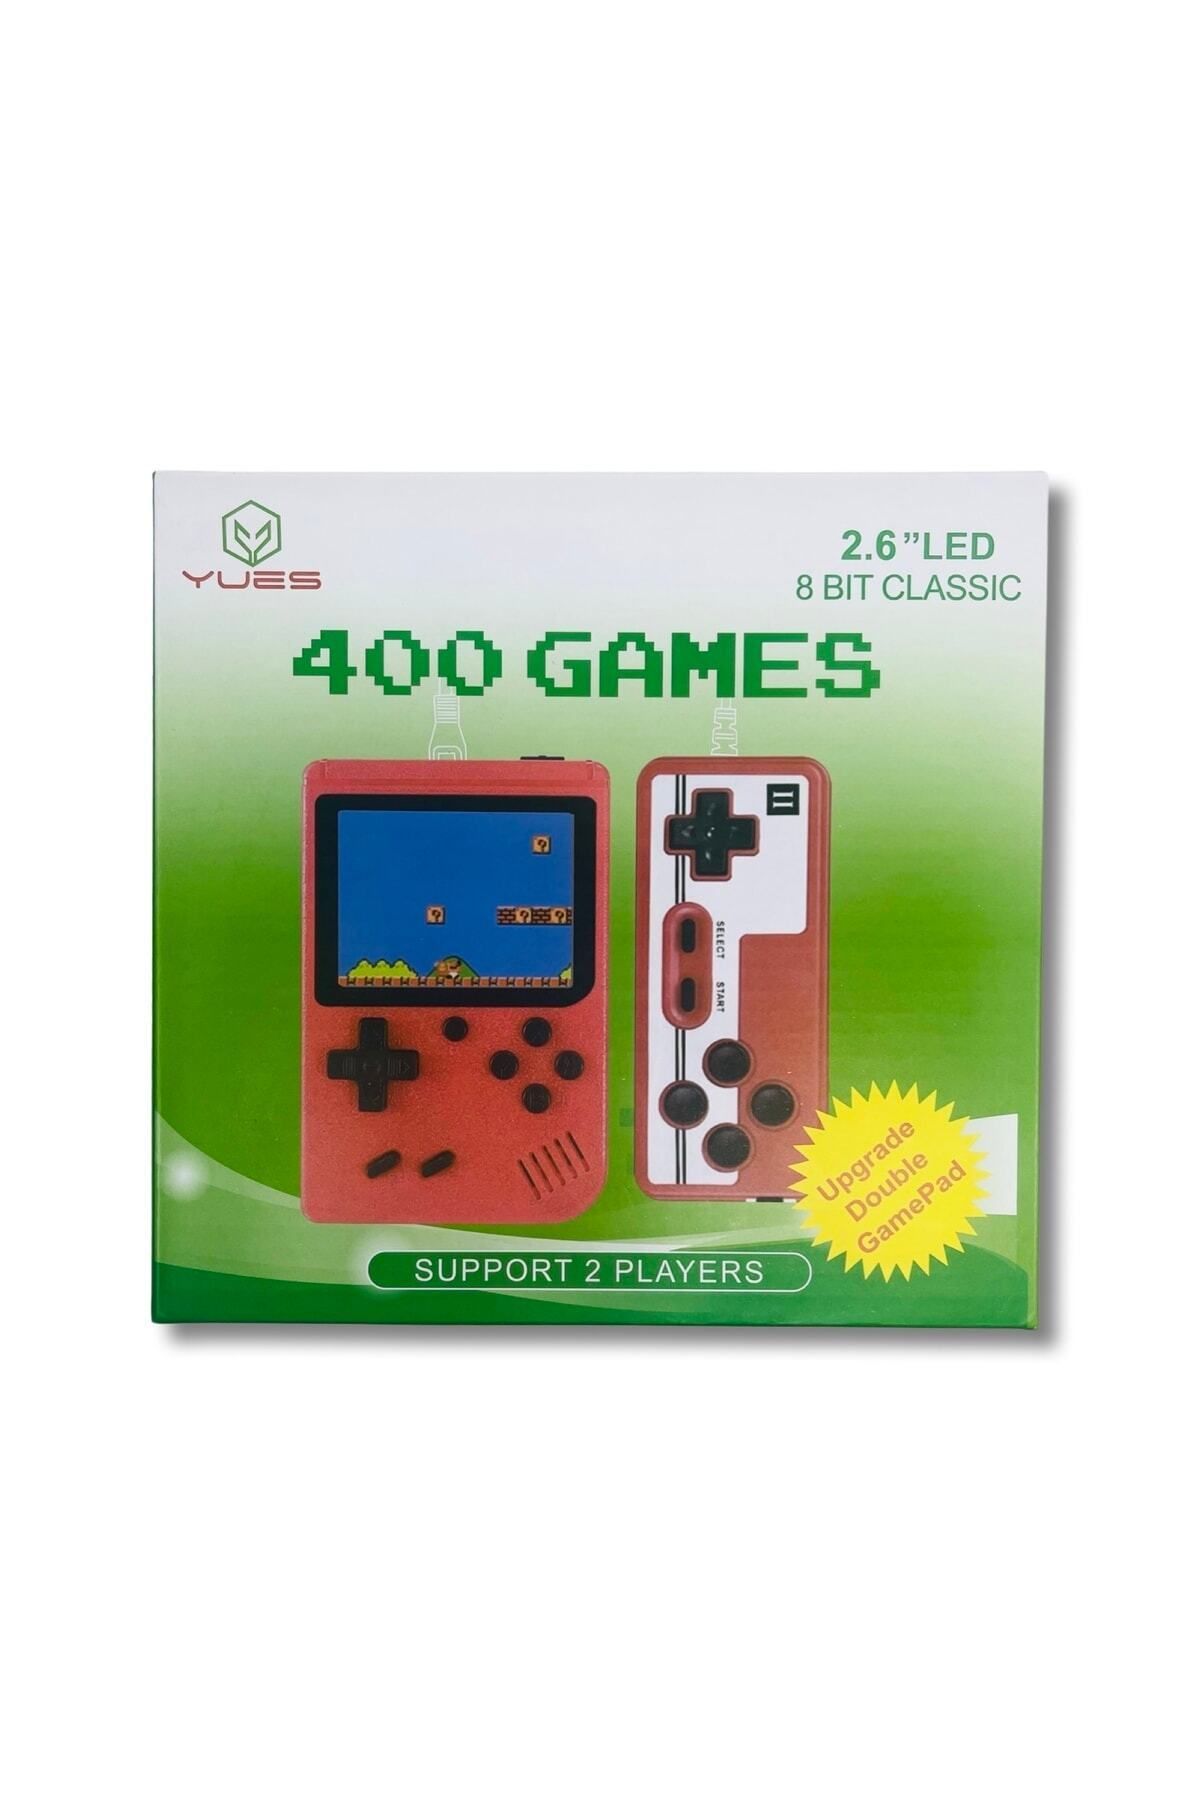 YUES Retro El Atarisi 400 Oyunlu Nostalji Oyun Konsolu 2 Kişilik Kırmızı